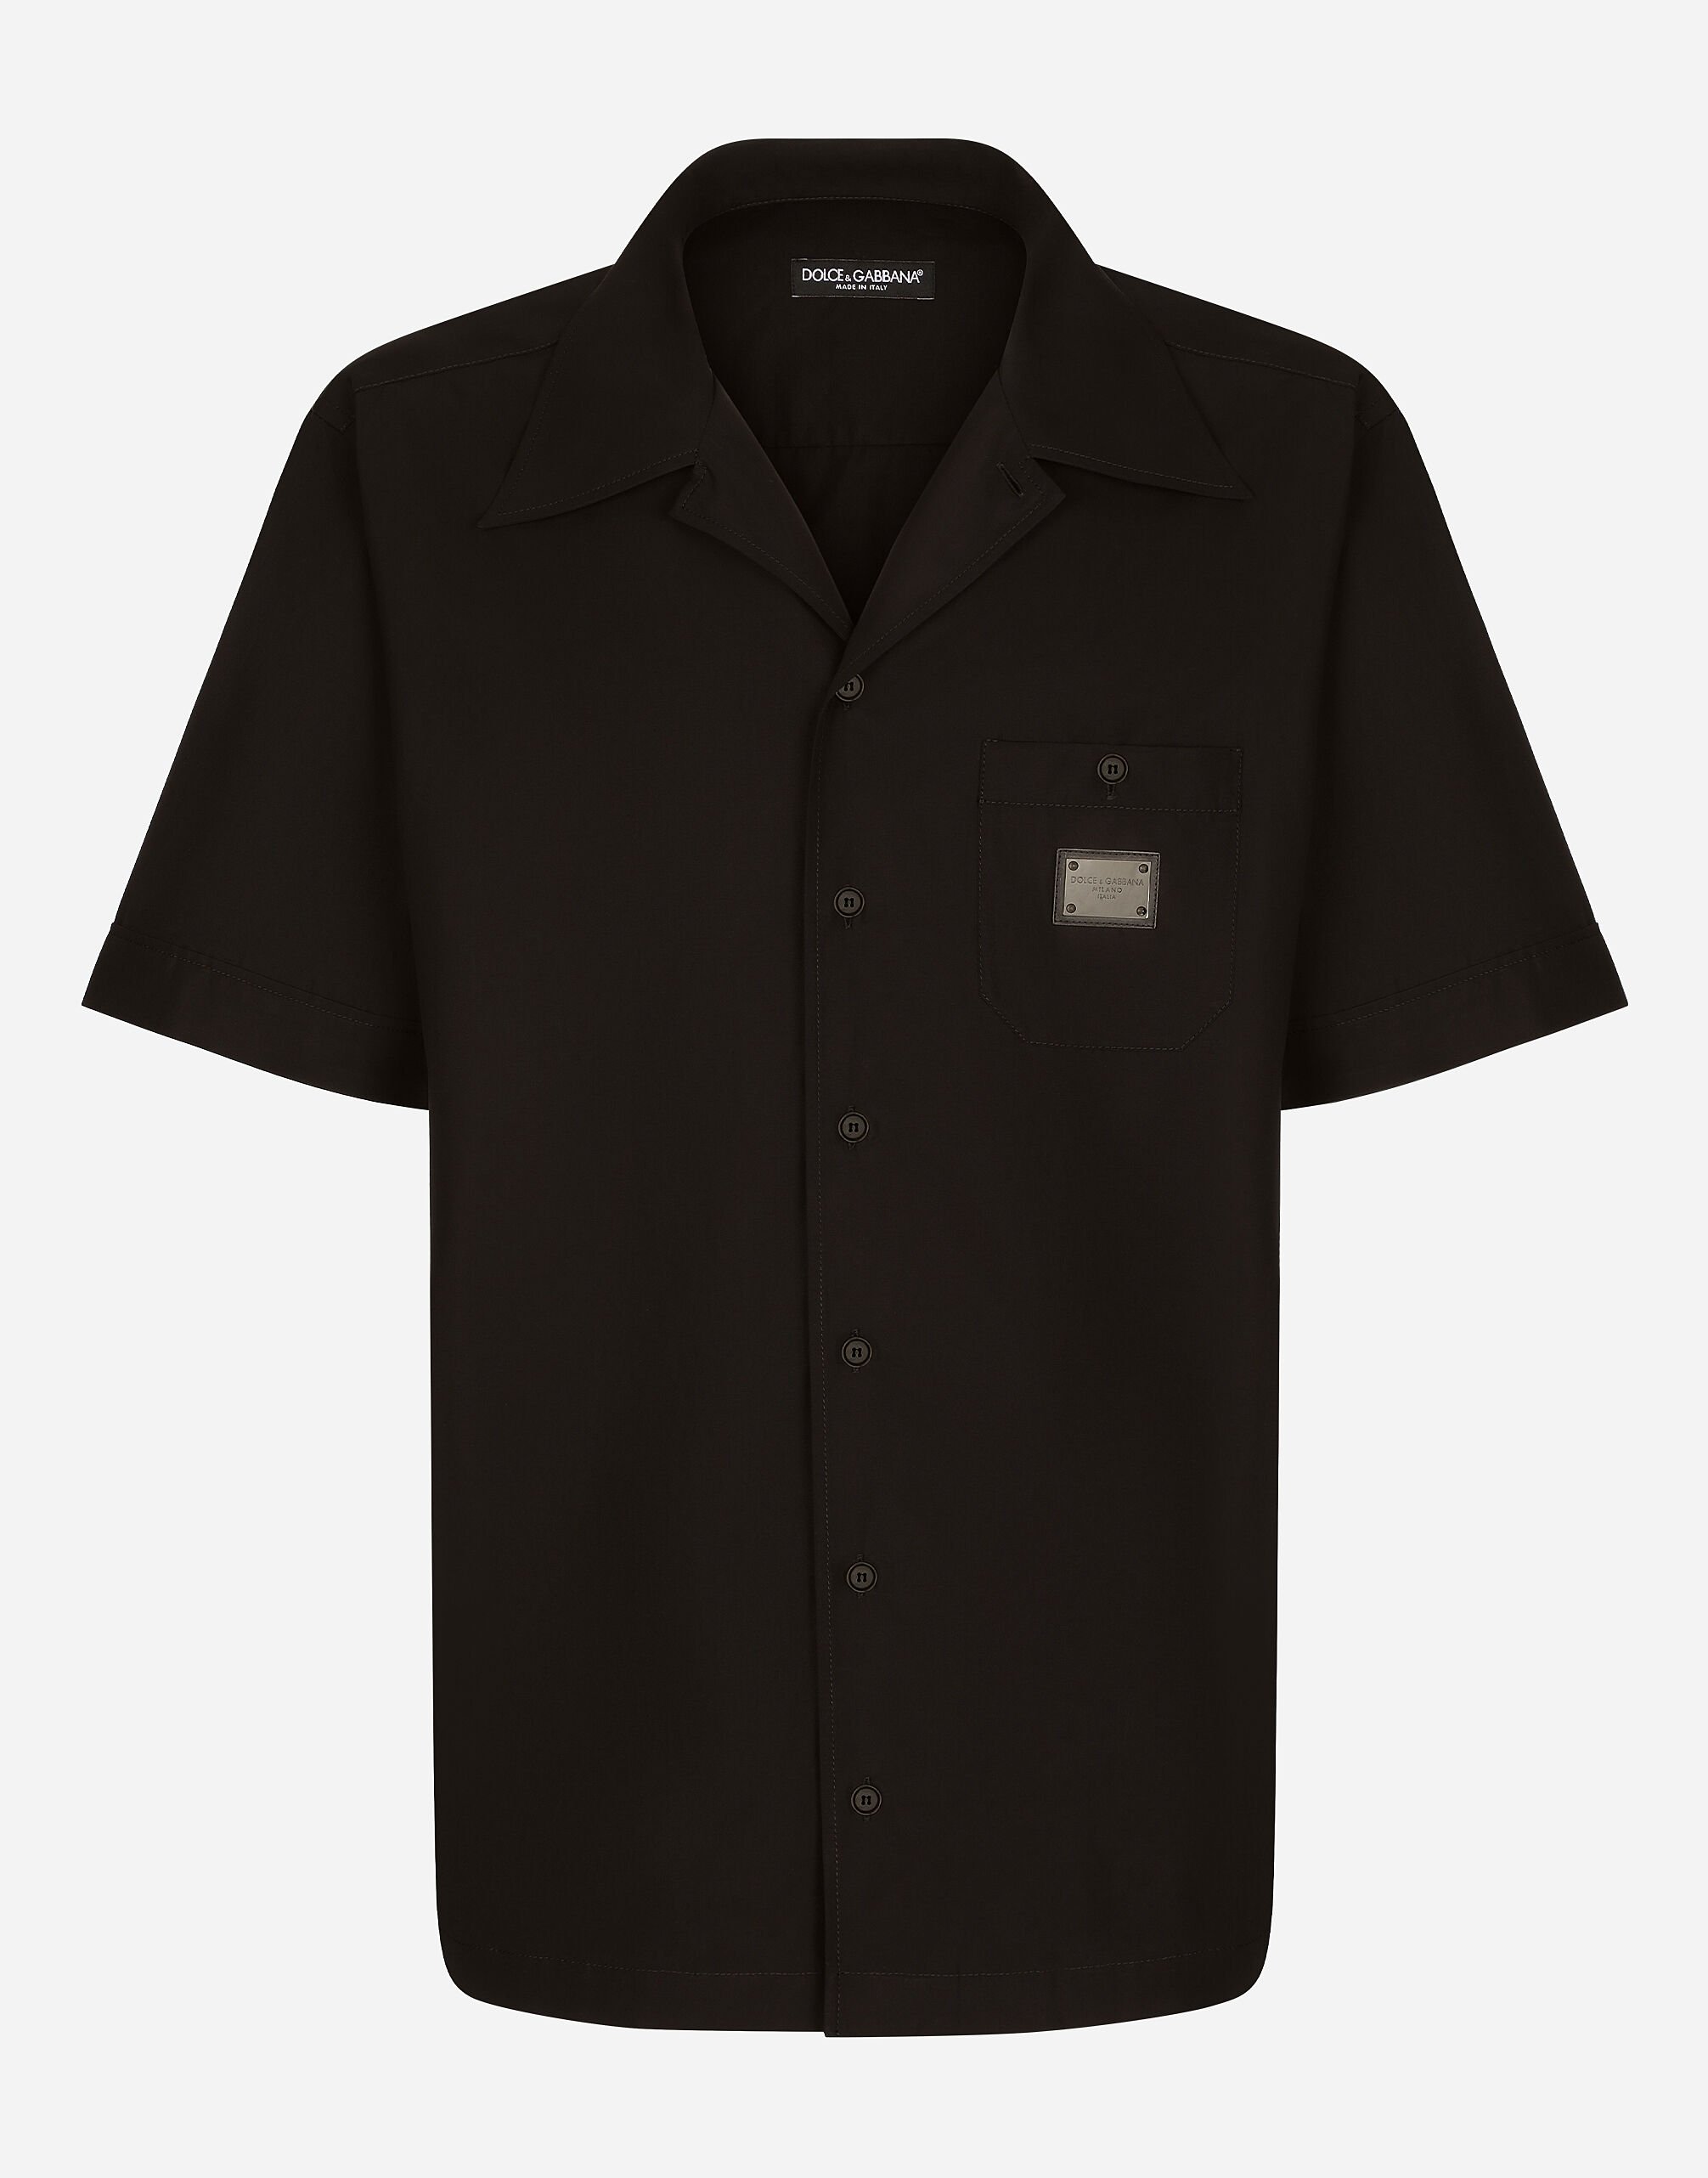 Dolce & Gabbana 로고 태그 하와이안 코튼 셔츠 블랙 G5JG4TFU5U8